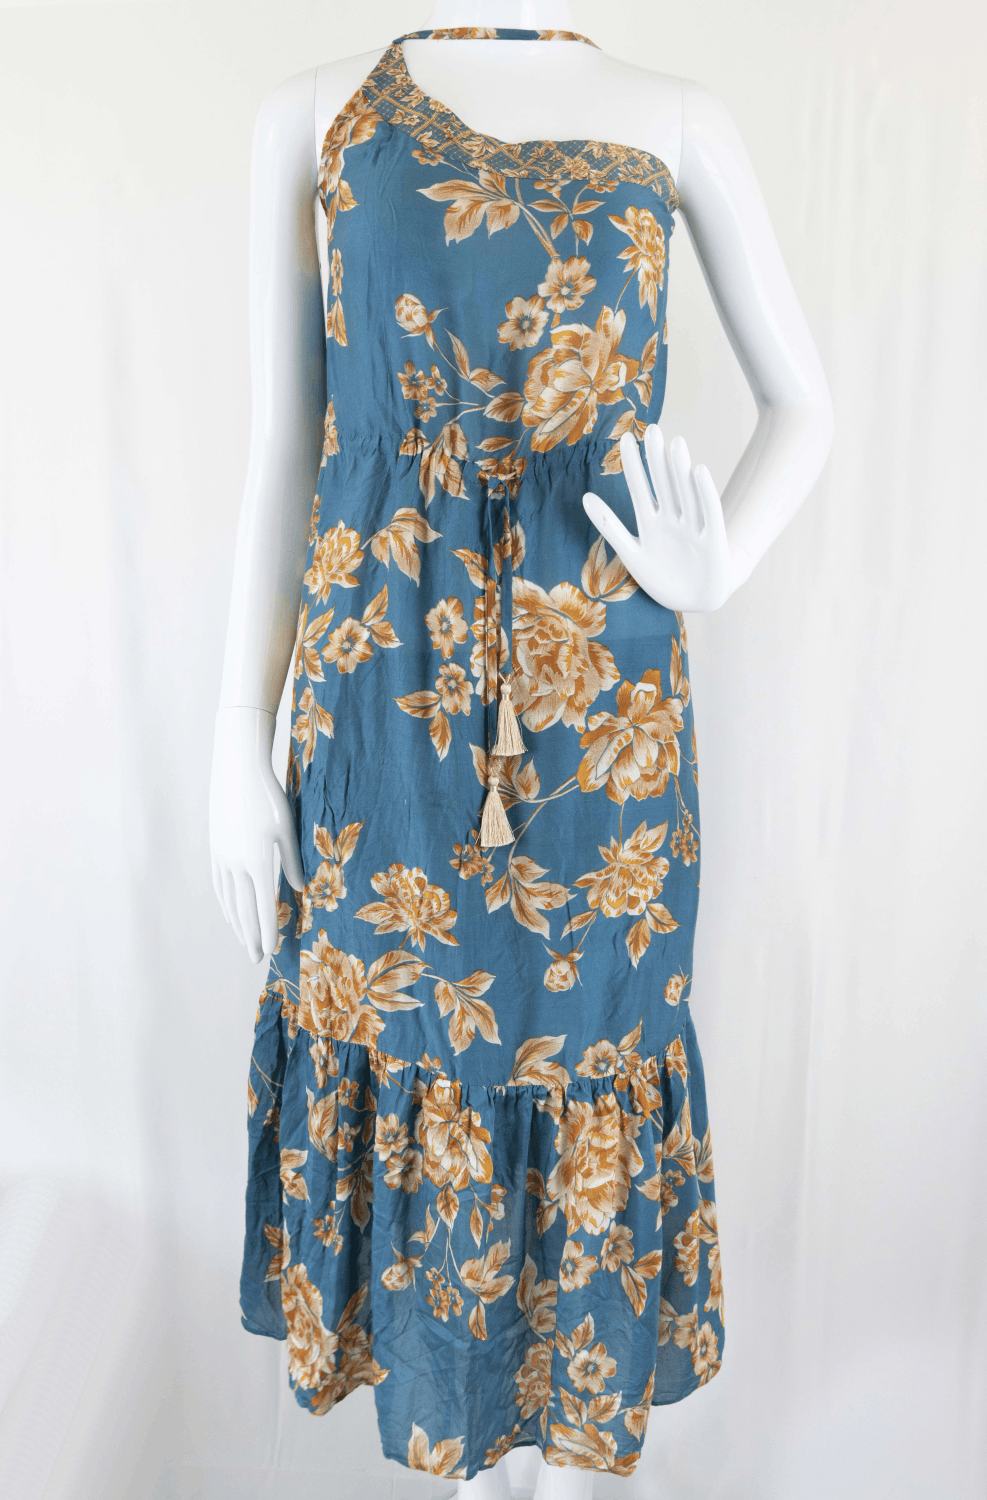 Jets Blue Floral Dress 6